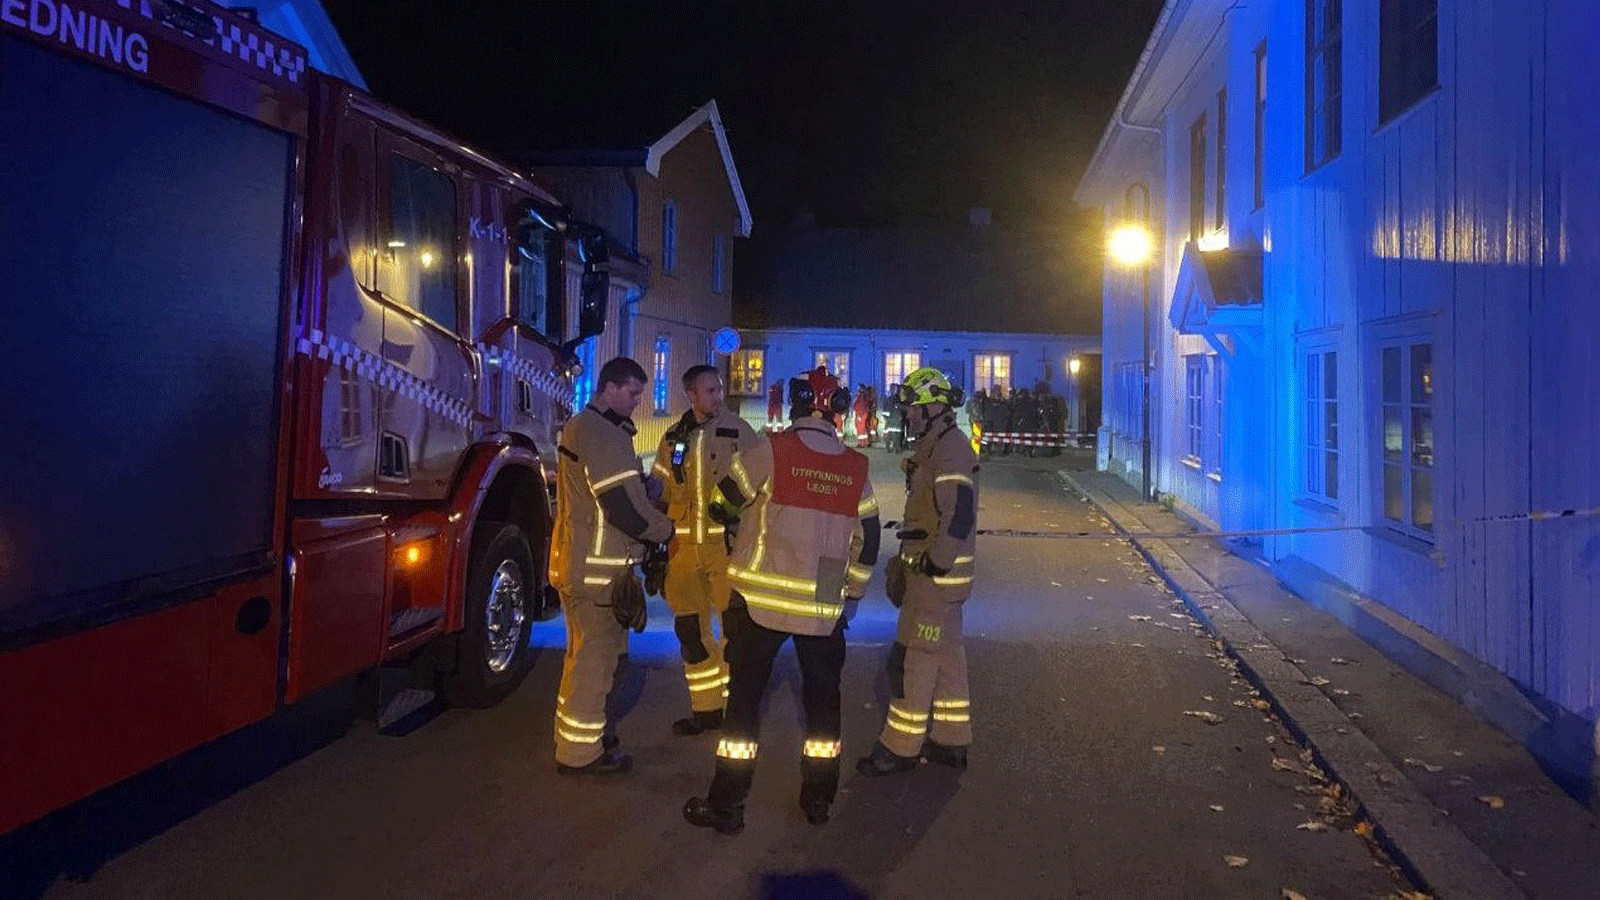 صورة متداولة عبر تويتر من النرويج ، كونغسبيرغ، على بعد حوالي 85 كيلومترًا جنوب غرب أوسلو. حيث ظهر رجل مسلح بالقوس والنشاب وهاجم متسبباً بقتل وجرح عدة أشخاص.